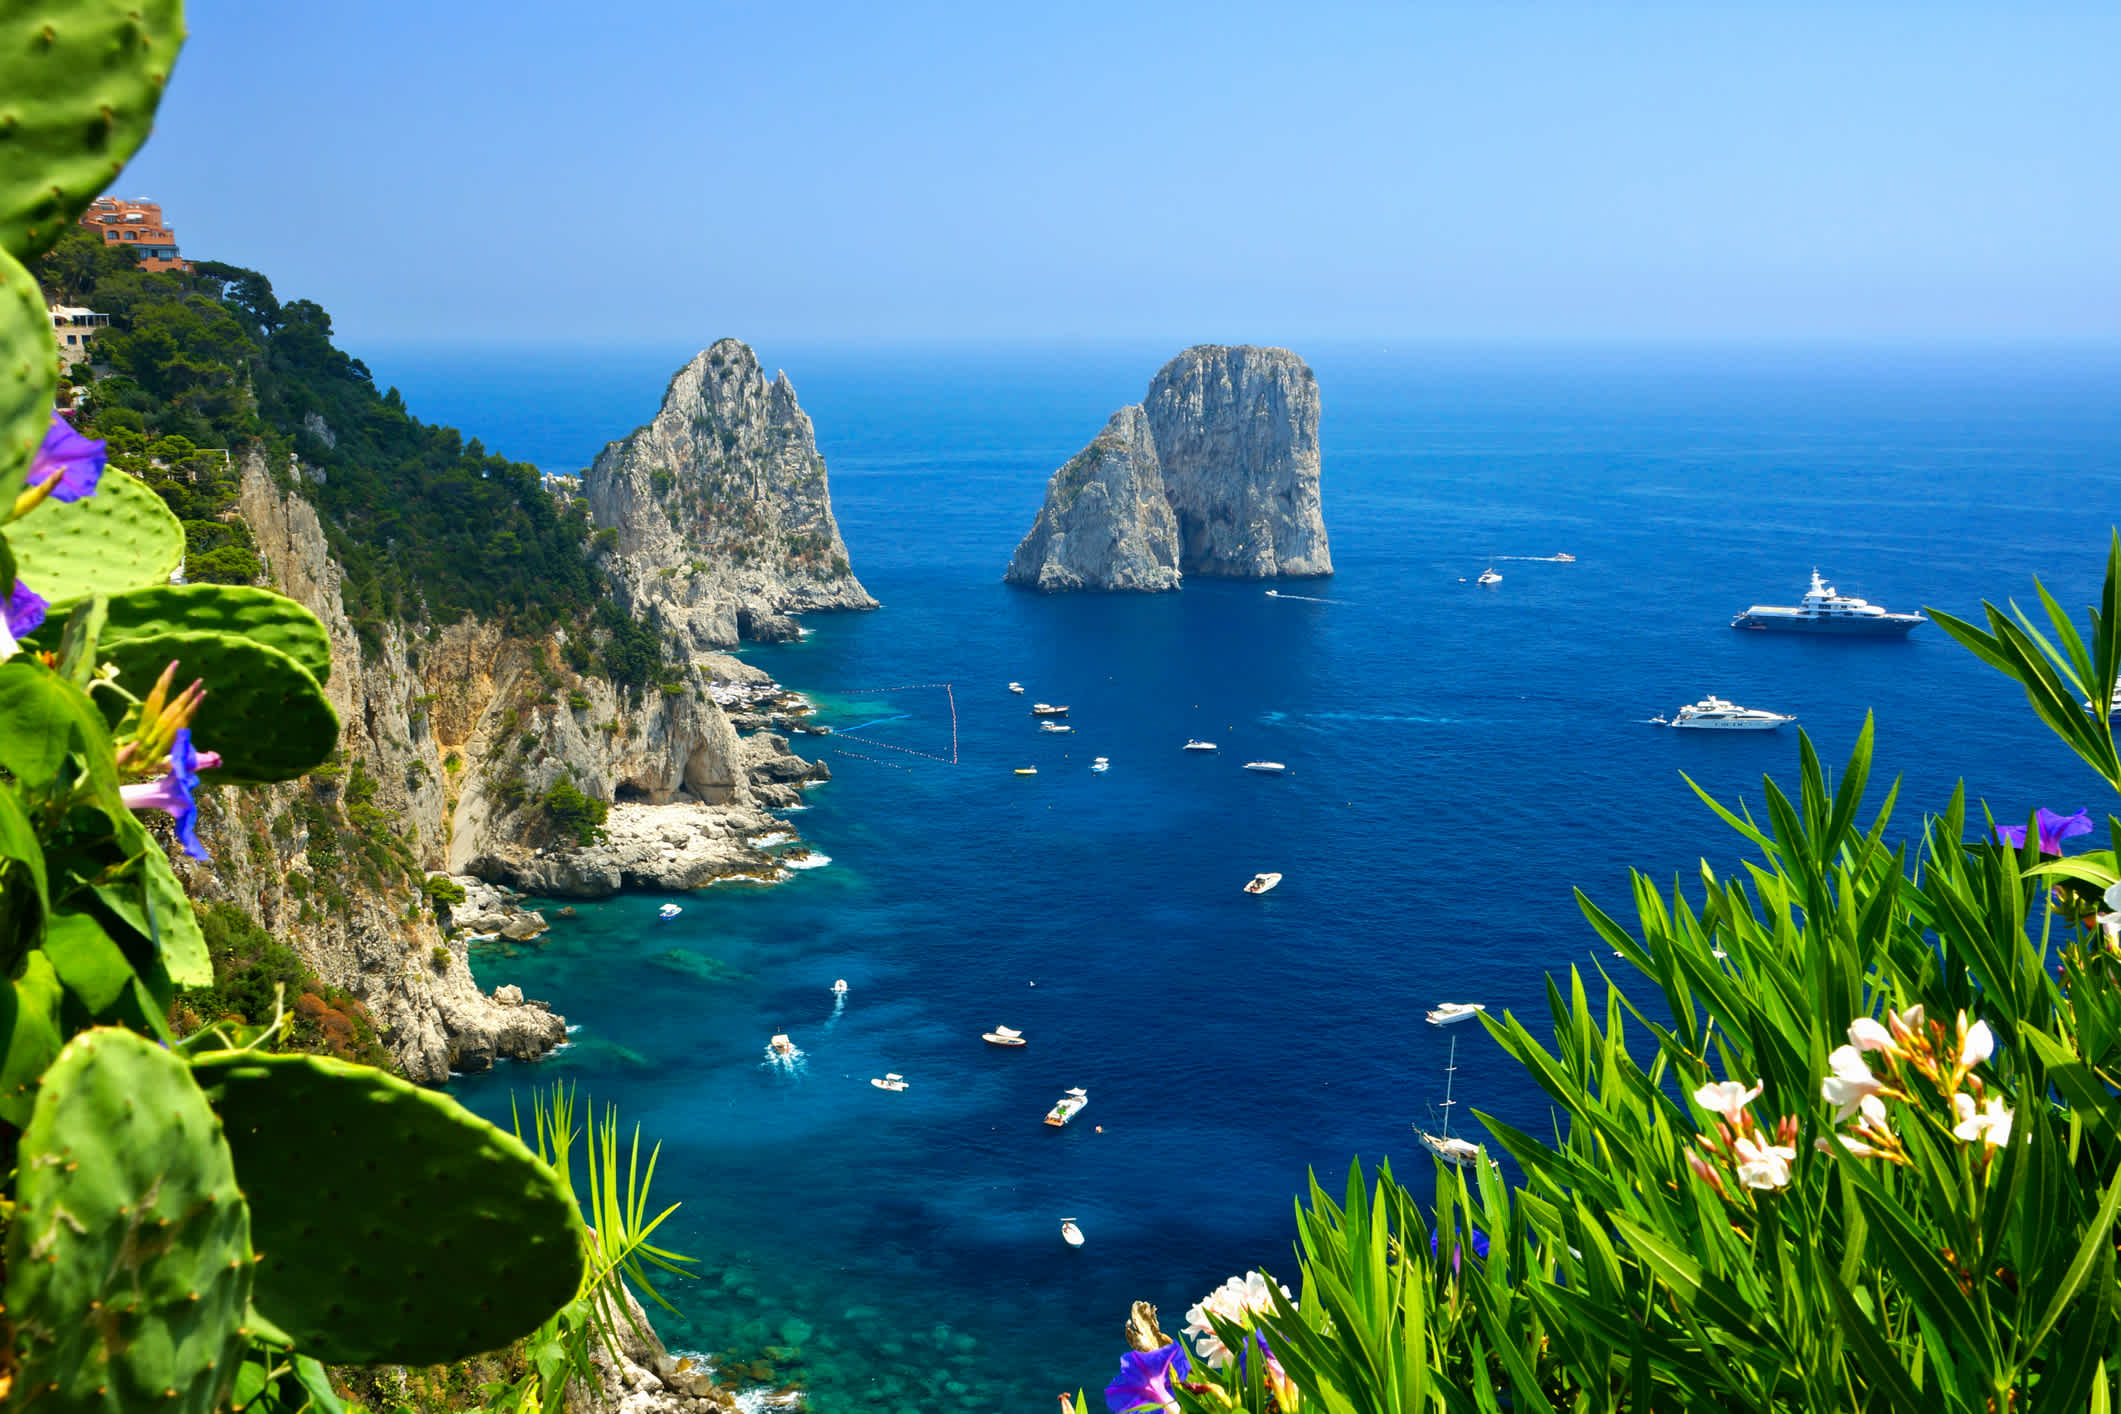 Vue de la côte de Capri avec les rochers Faraglioni, des fleurs et des bateaux dans la mer bleue en Italie
